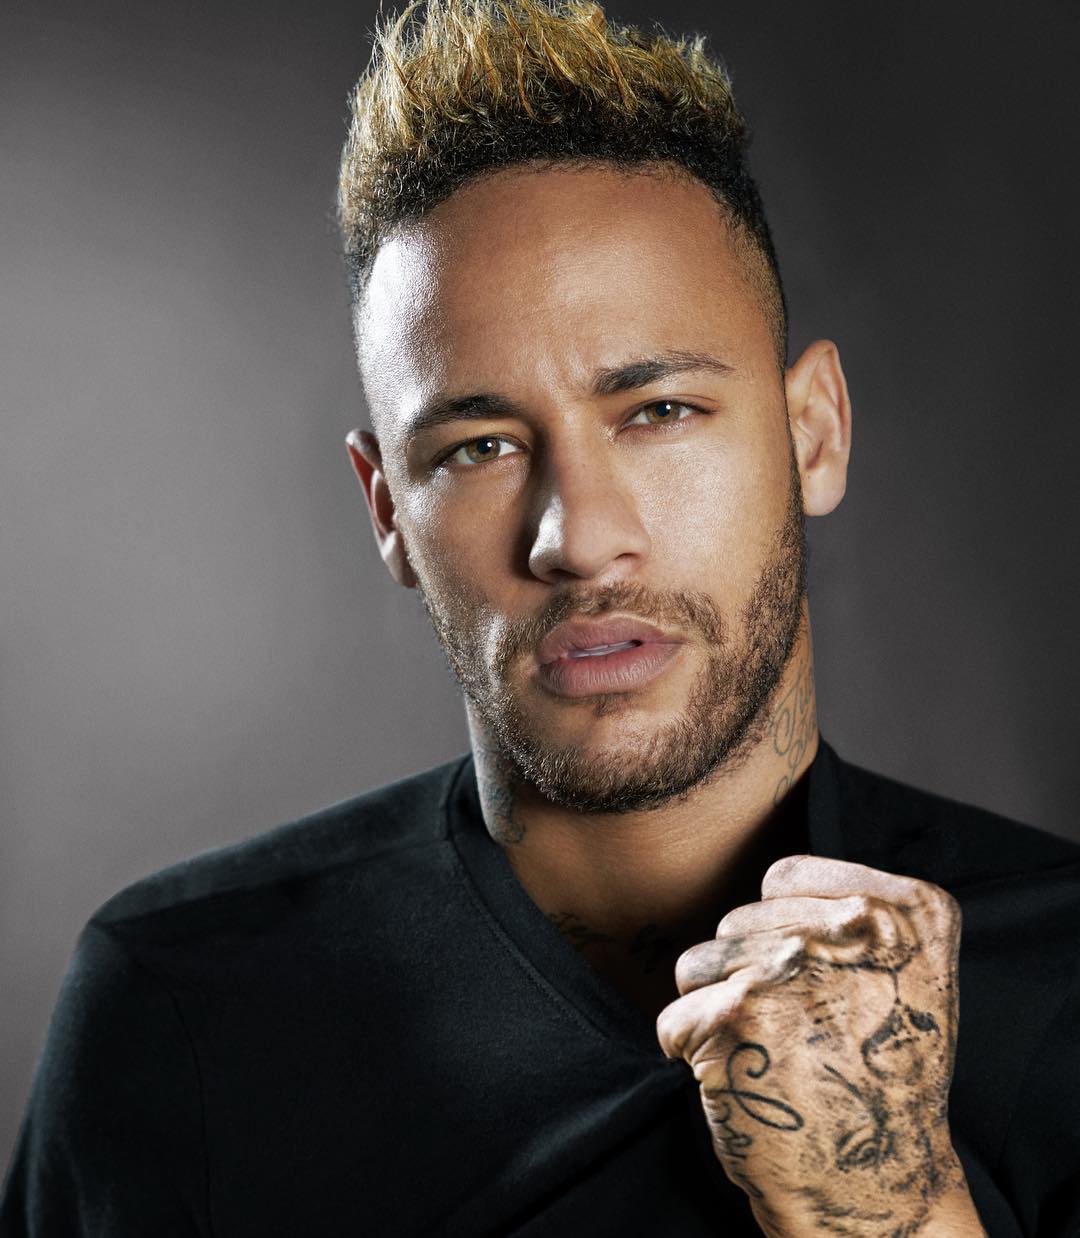 Neymar Mulher Que Acusa Neymar De Violação Tem Dívida De Mais De Seis Mil Euros